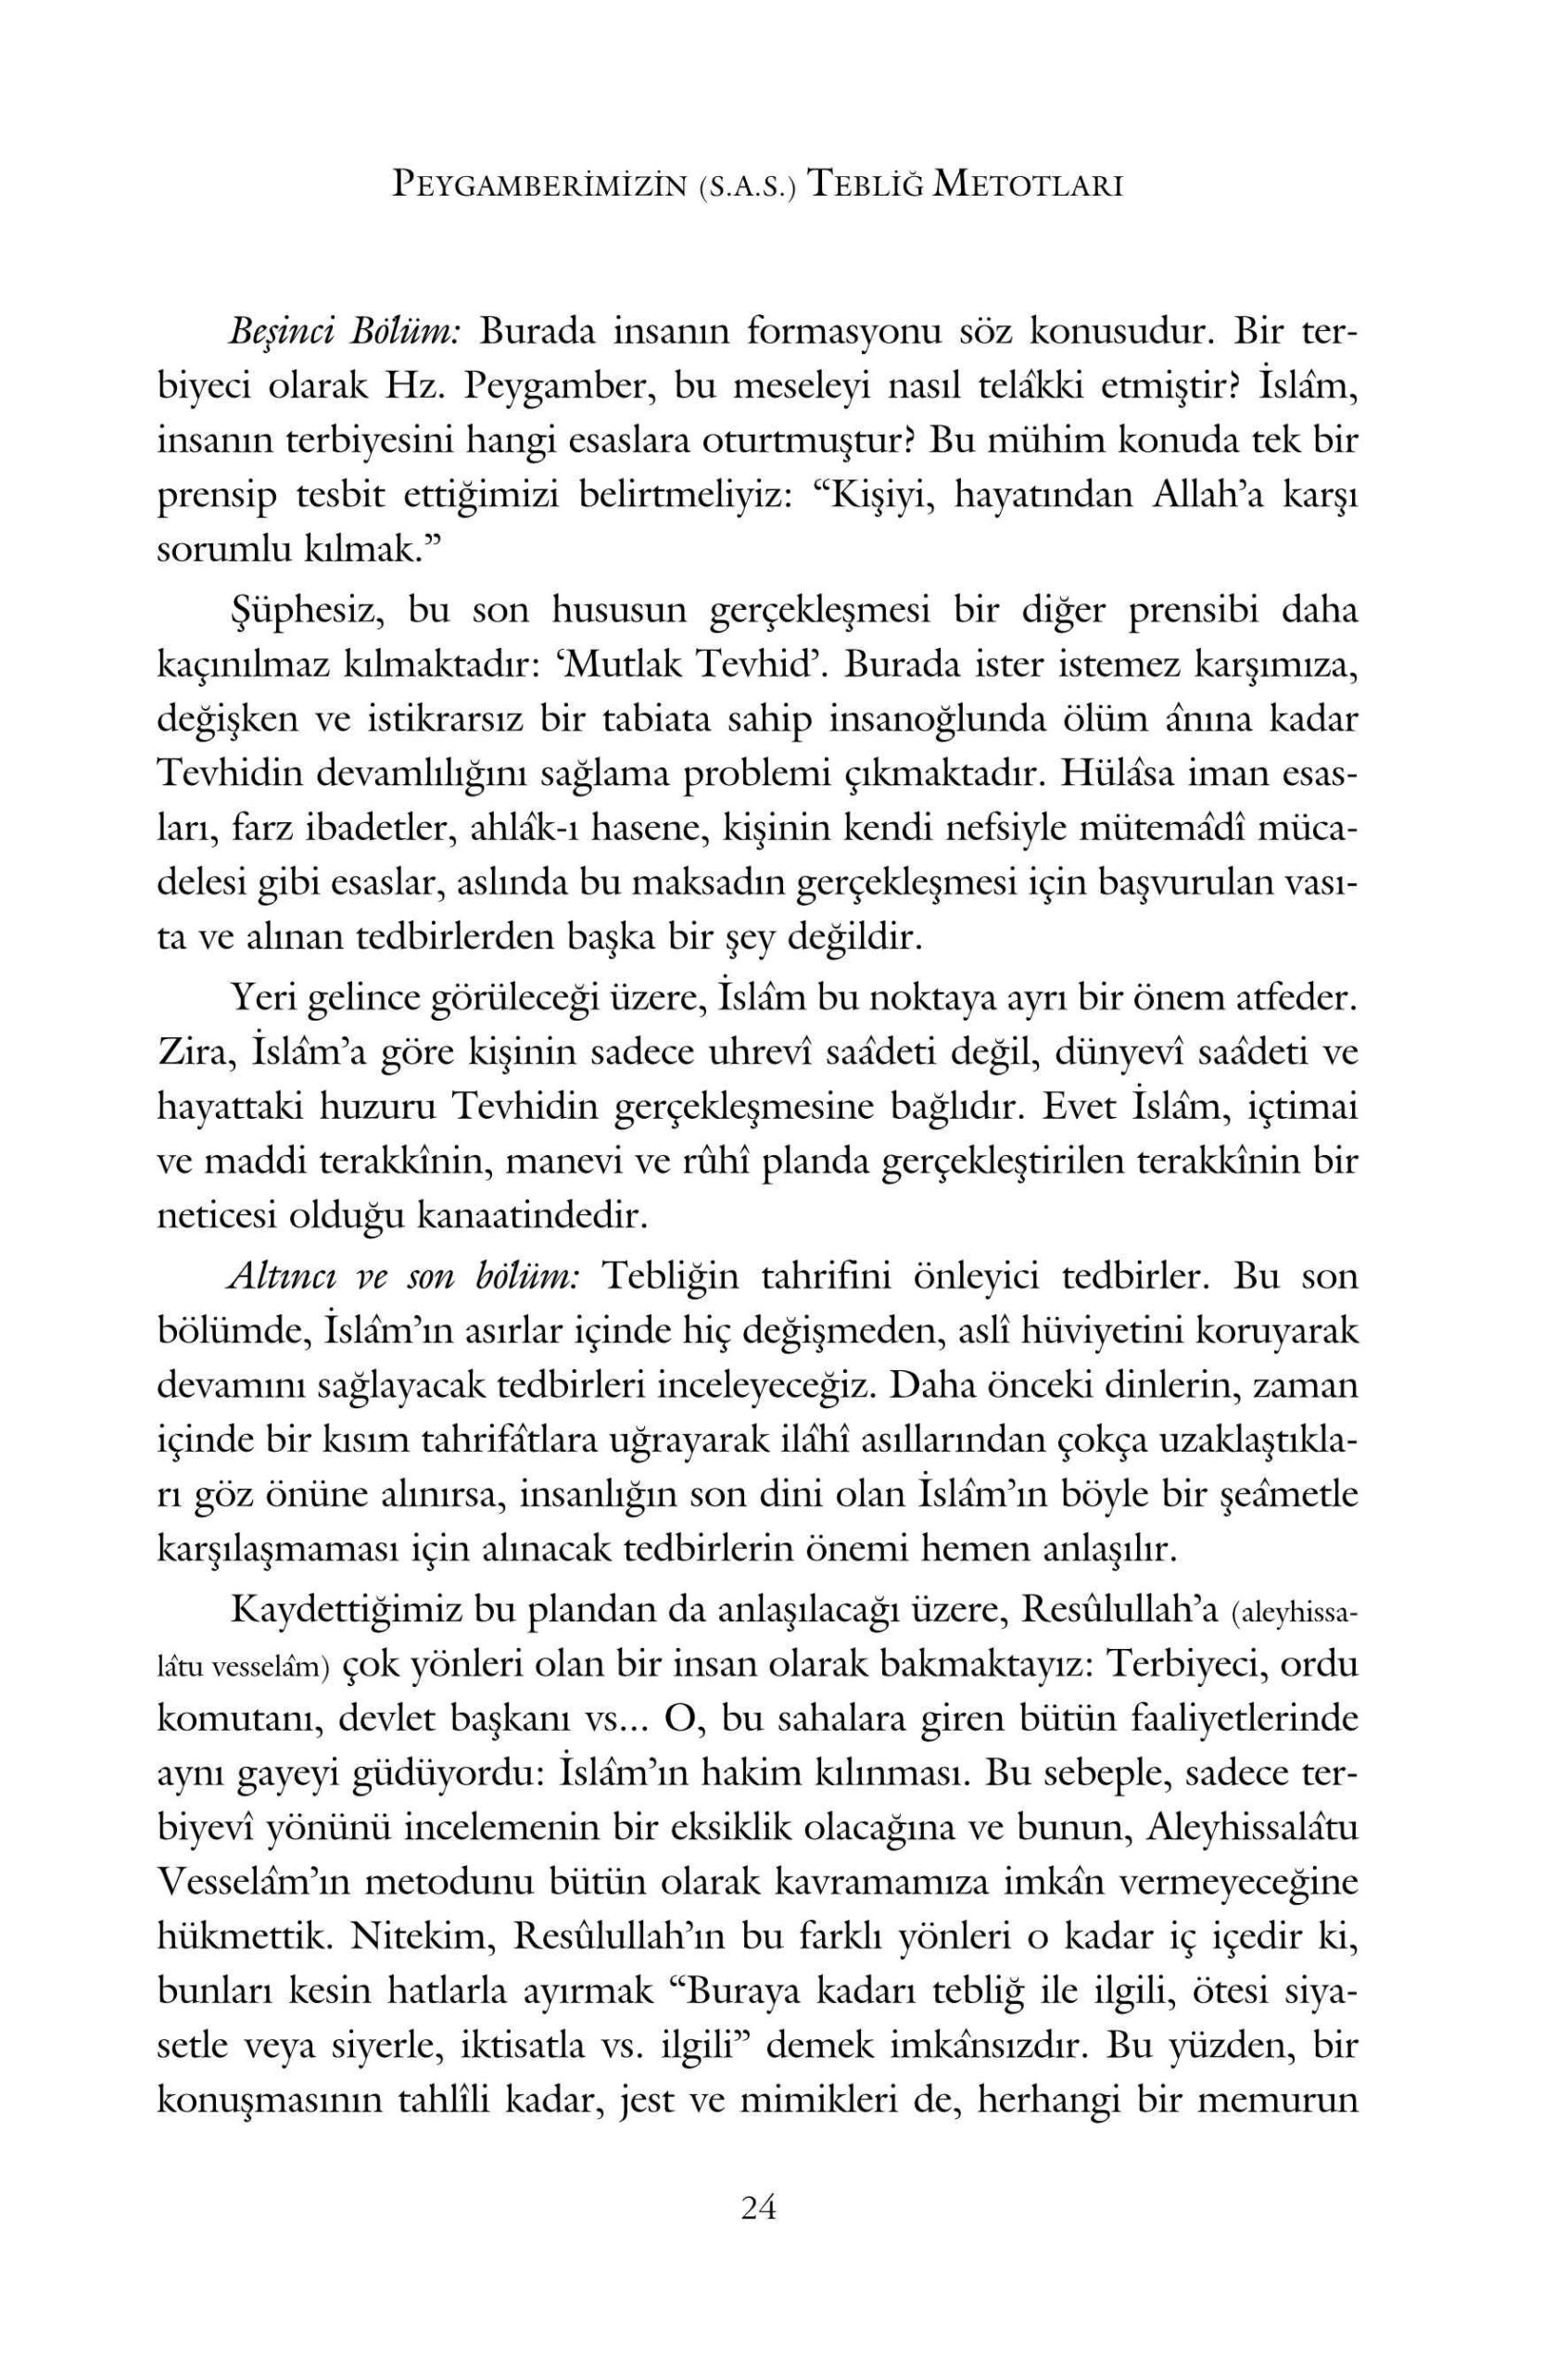 Ibrahim Canan - Peygamberimizin Teblig Metodlari - IsikAkademiY.pdf, 573-Sayfa 